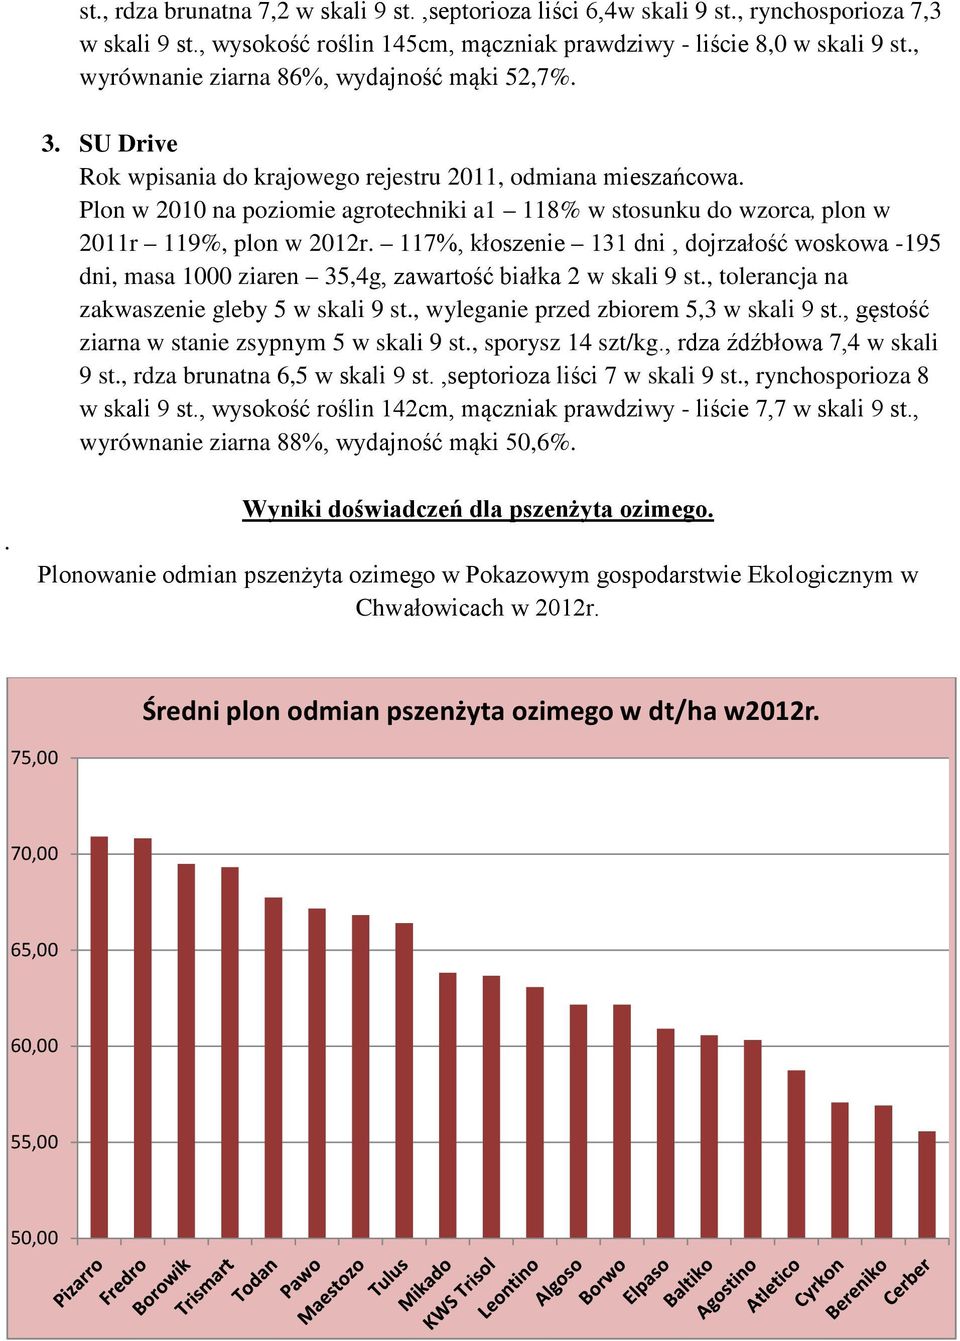 Plon w 2010 na poziomie agrotechniki a1 118% w stosunku do wzorca, plon w 2011r 119%, plon w r.